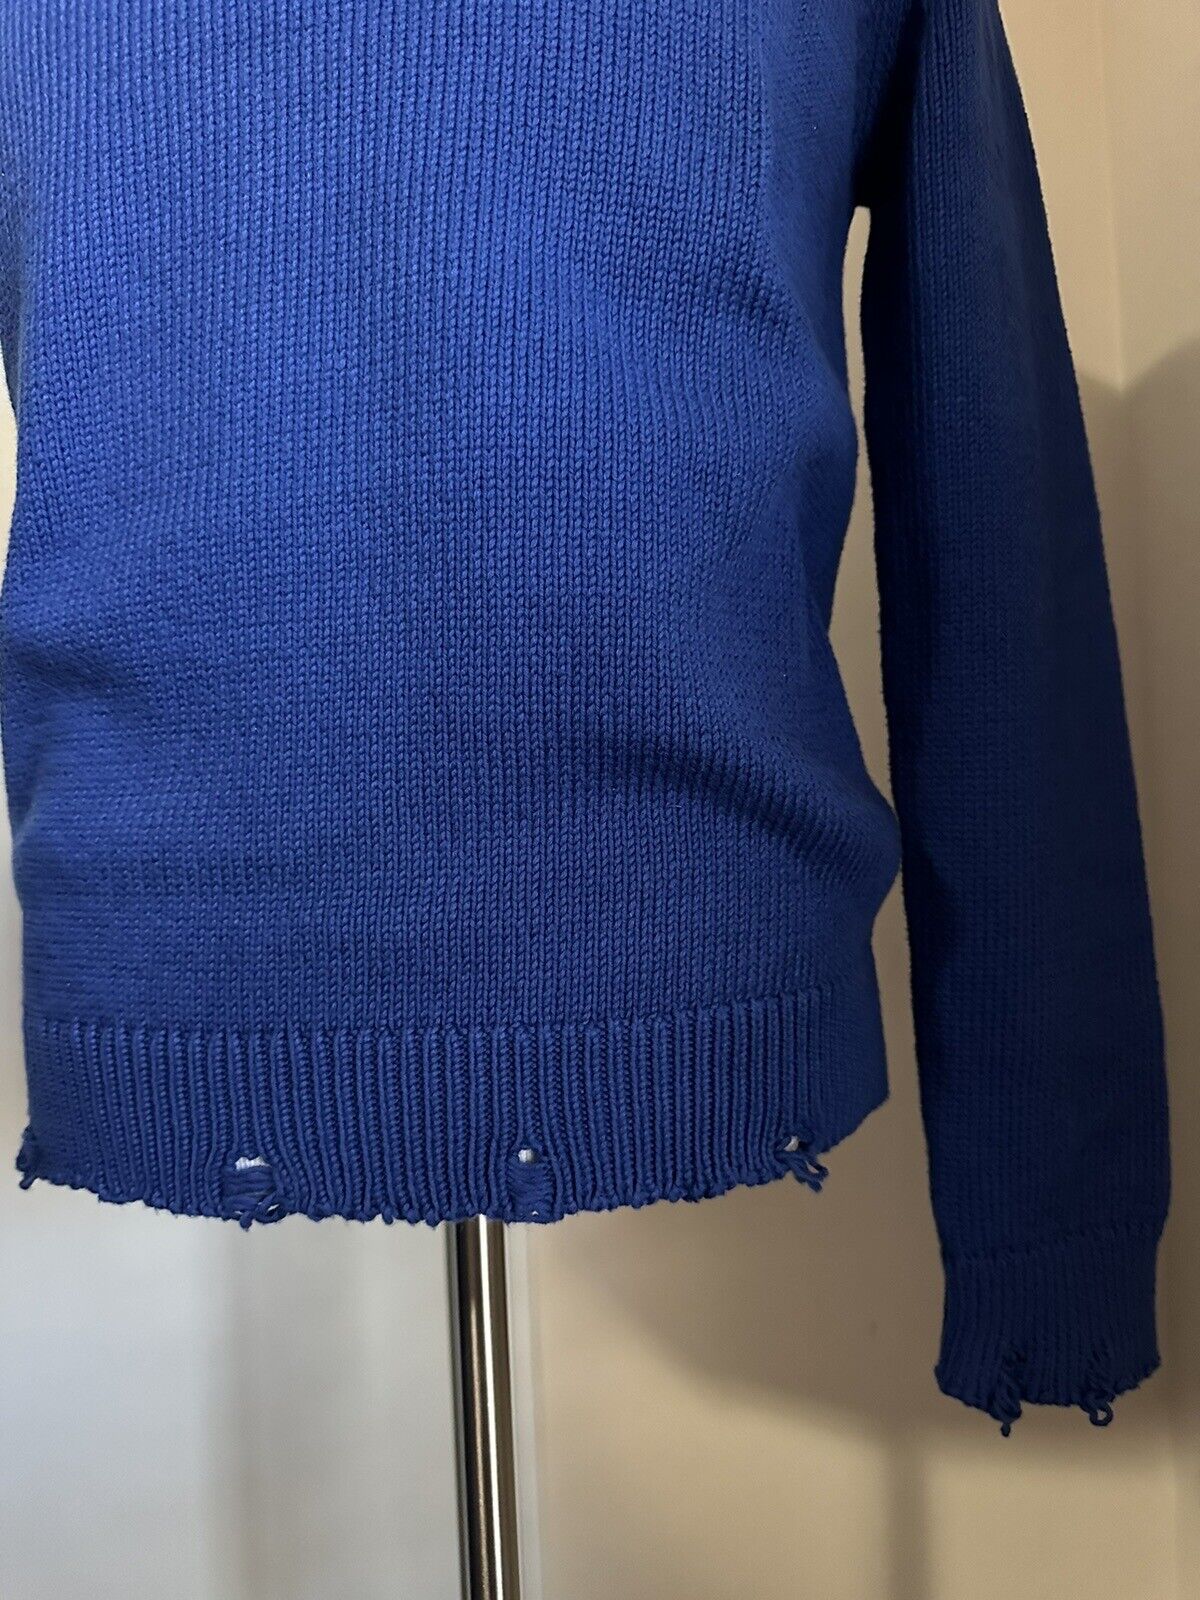 NWT $890 Мужской свитер с круглым вырезом Saint Laurent синий, размер XL, Италия